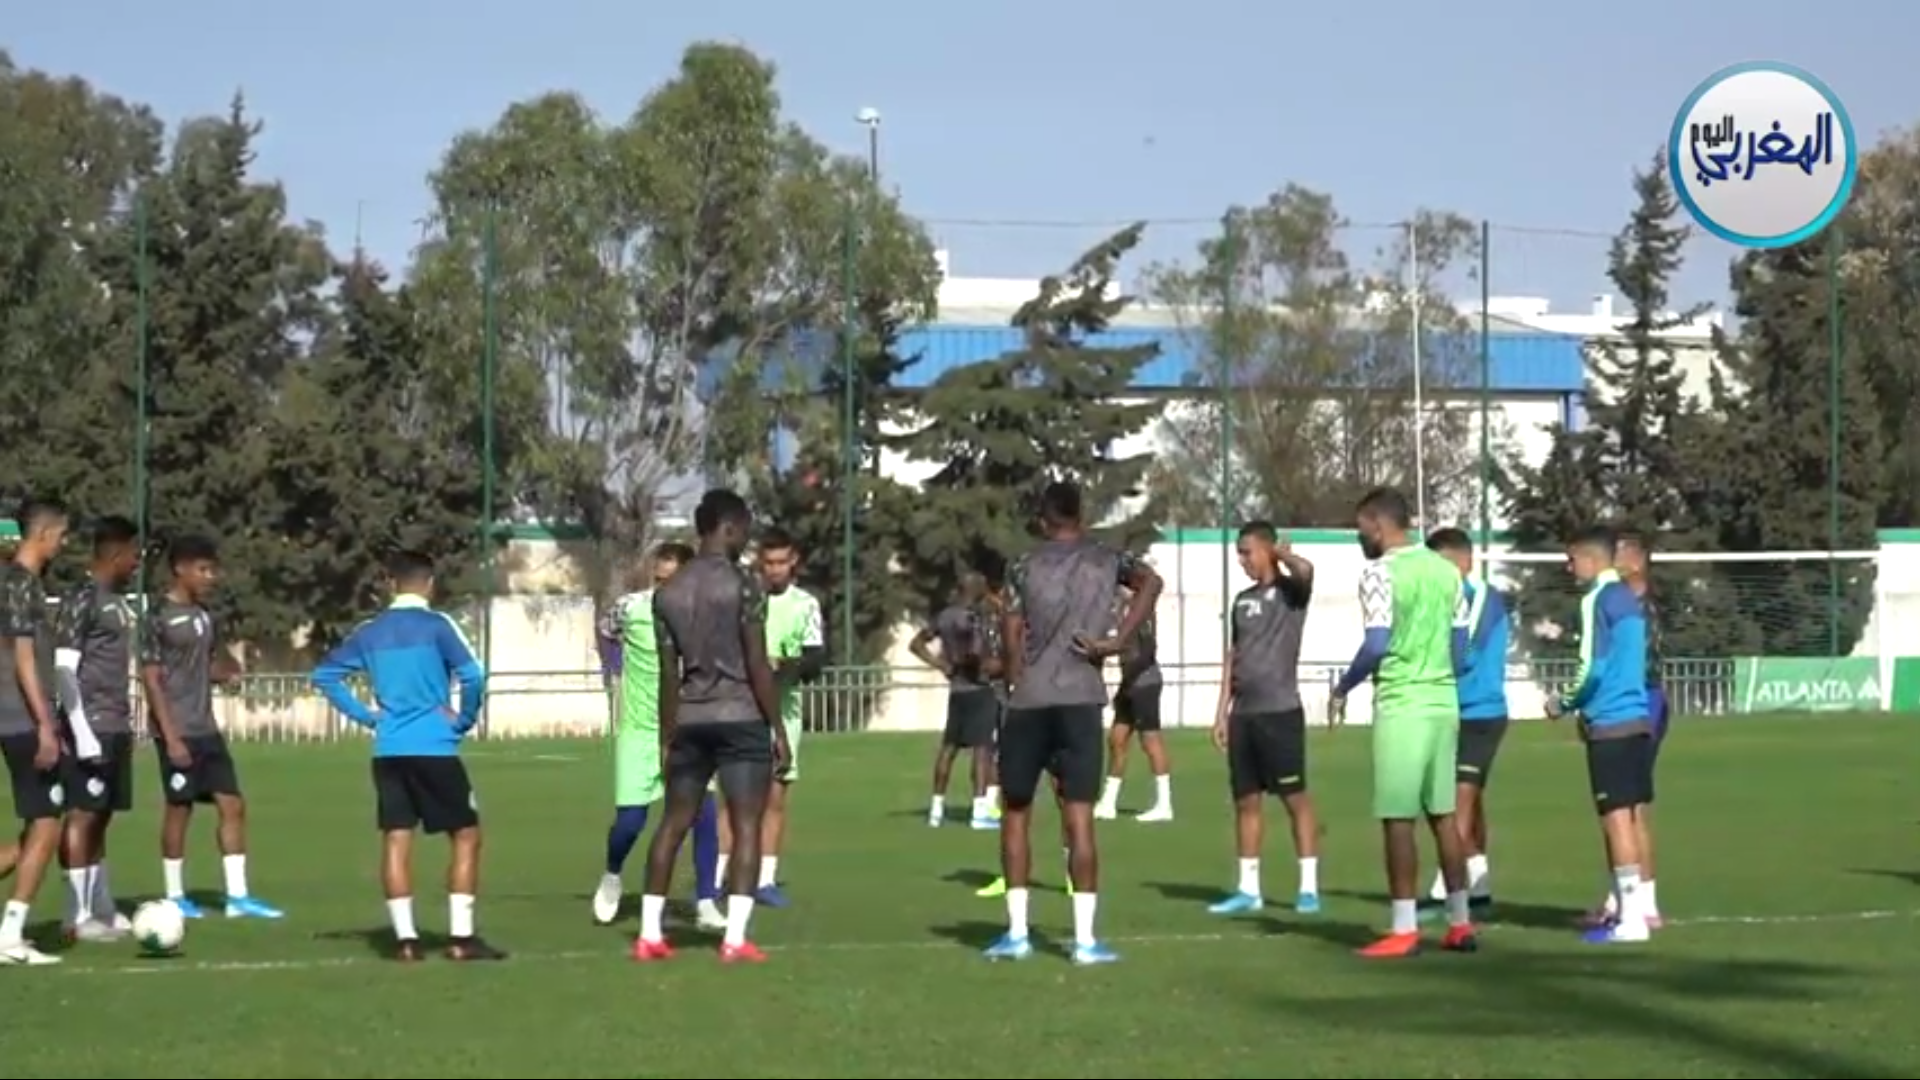 شاهد الأجواء الحماسية لتدريبات لاعبي الرجاء العالمي قبل مواجهة مولودية الجزائر  +فيديو